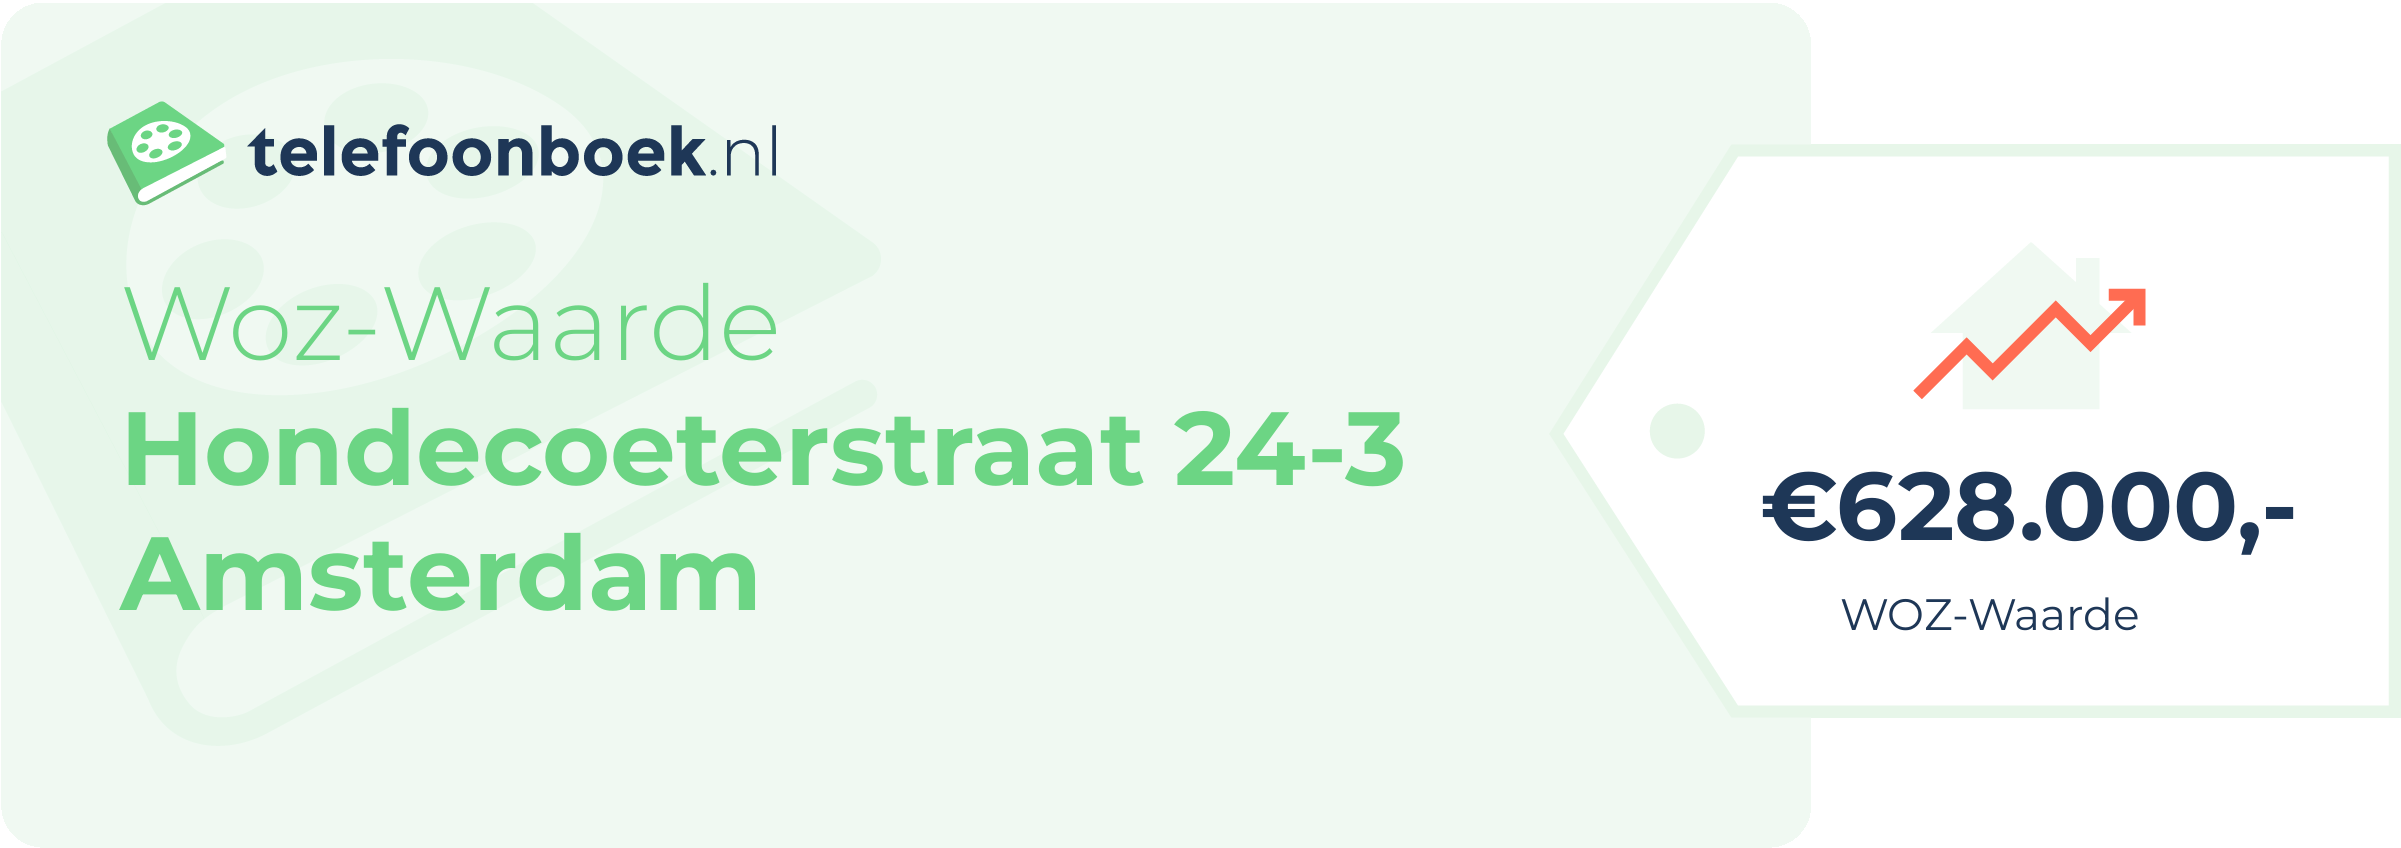 WOZ-waarde Hondecoeterstraat 24-3 Amsterdam